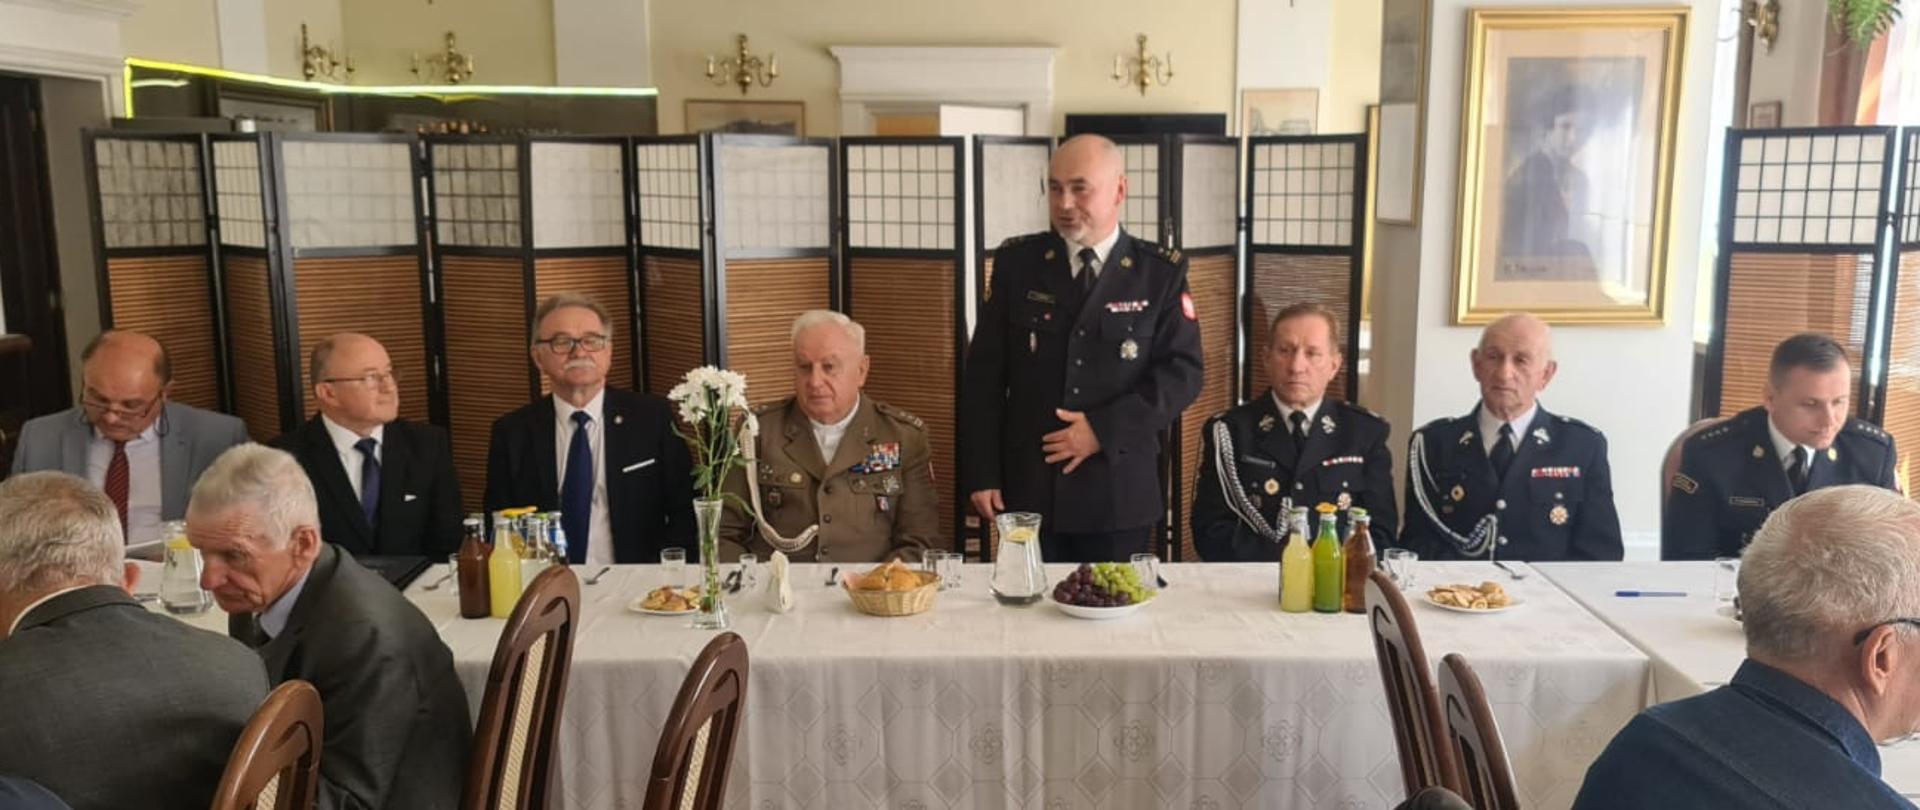 Na zdjęciu widać zarząd koła emerytów i rencistów pożarnictwa w Jarosławiu, komendanta powiatowego PSP w Jarosławiu, a także kapelana ubranego w mundur wojskowy.